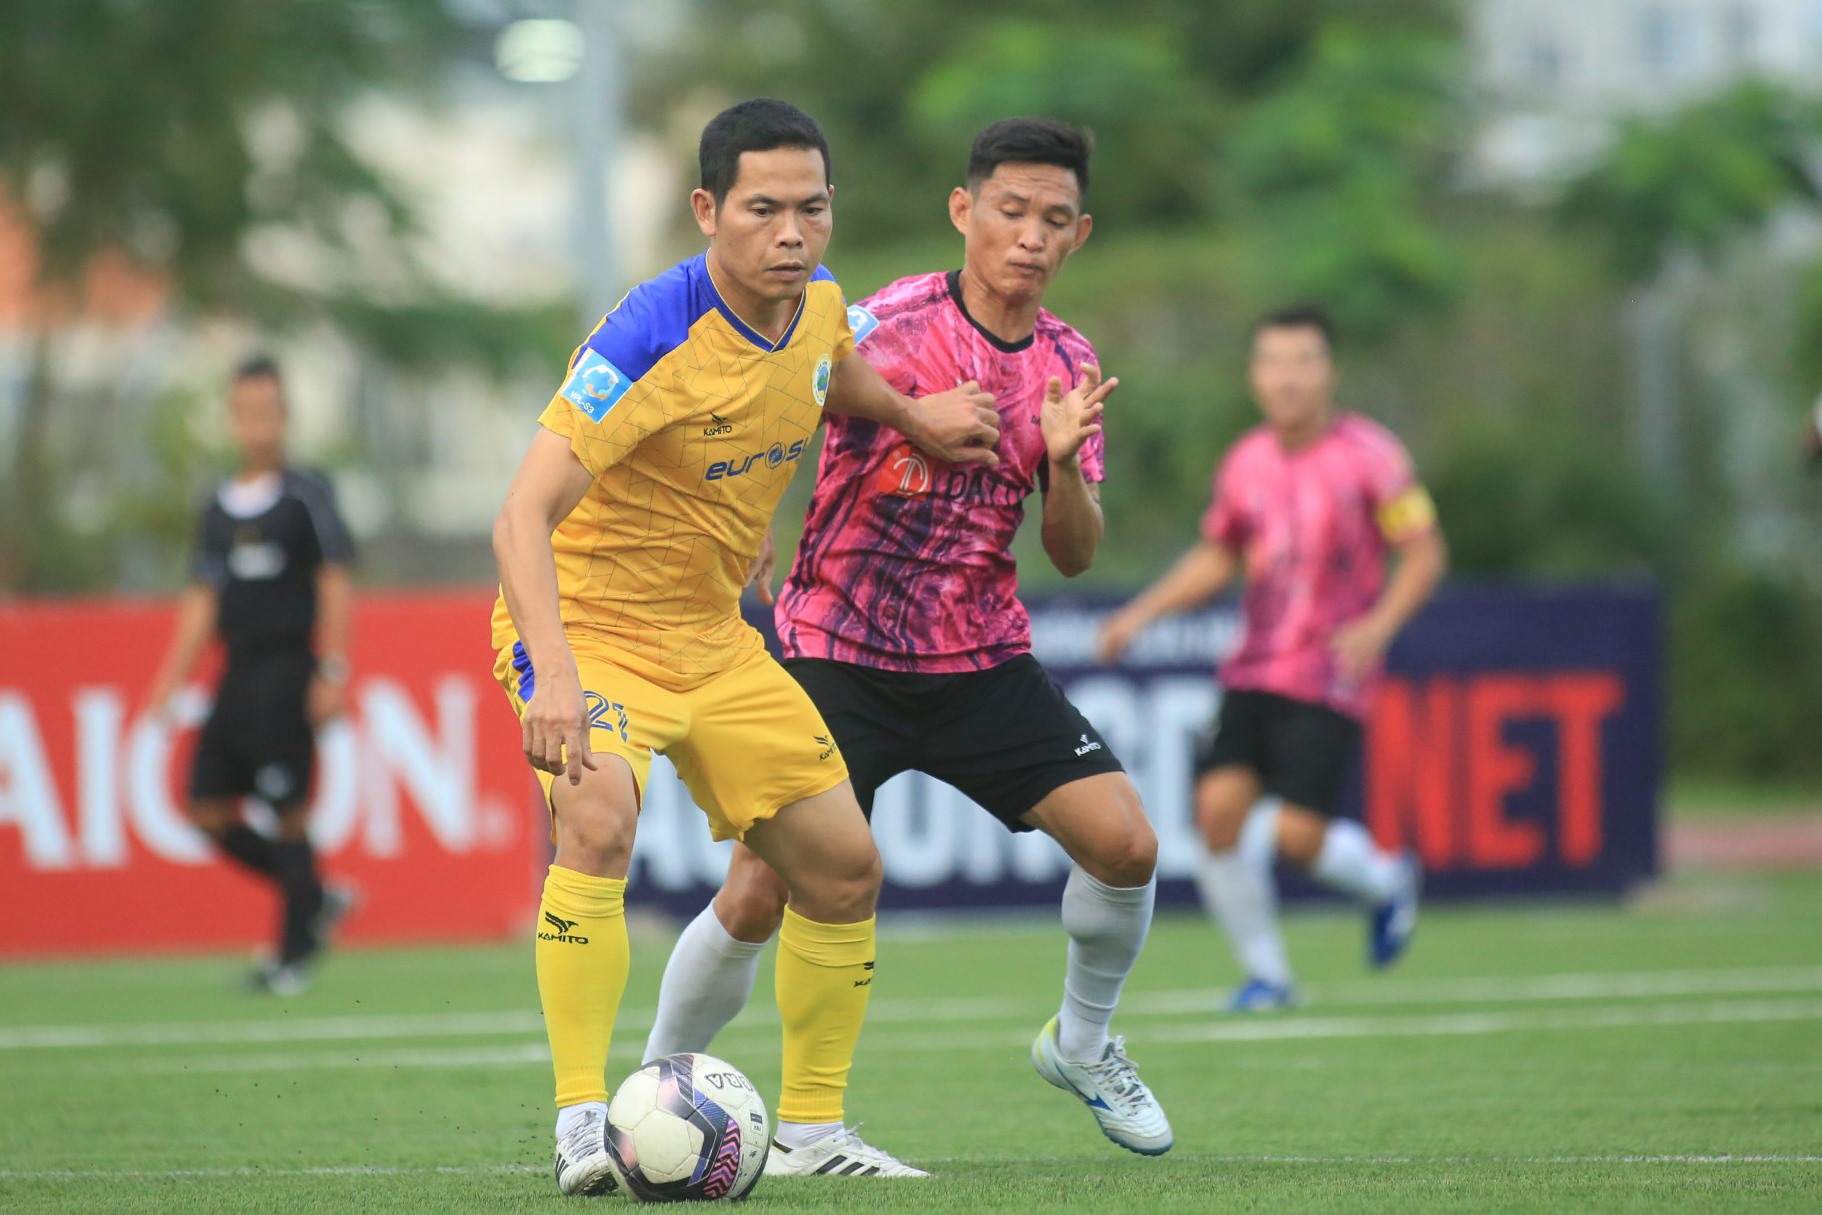 Trận đấu với Lam Hồng chỉ còn mang tính thủ tục khi trước lượt đấu này, Đạt Tín đã chính thức vô địch SPL-S4. Với đội hình 2, Tuấn Vinh và các đồng đội nhận thất bại 3-6 trước đại diện xứ Nghệ.